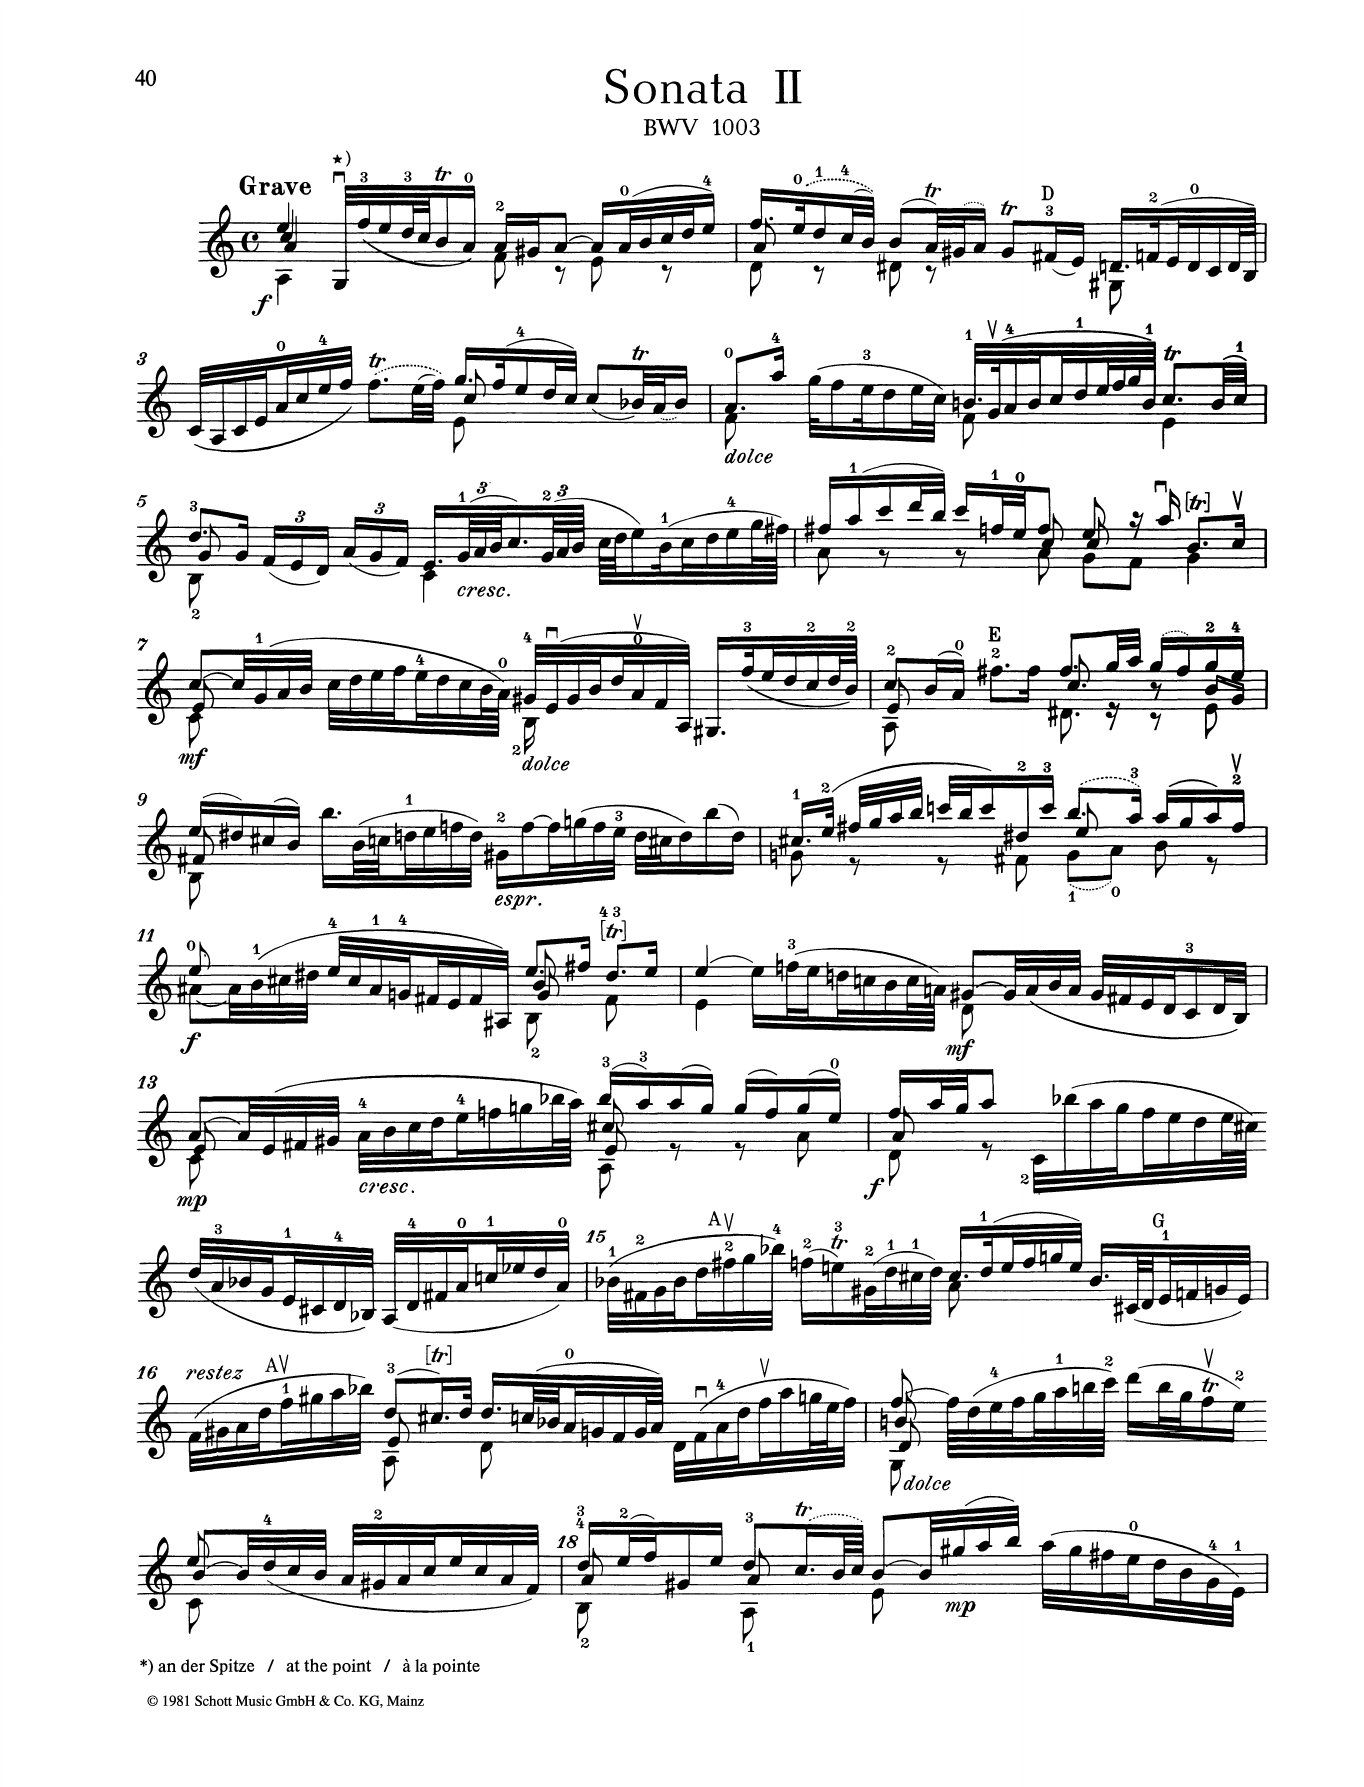 Sonata II sheet music